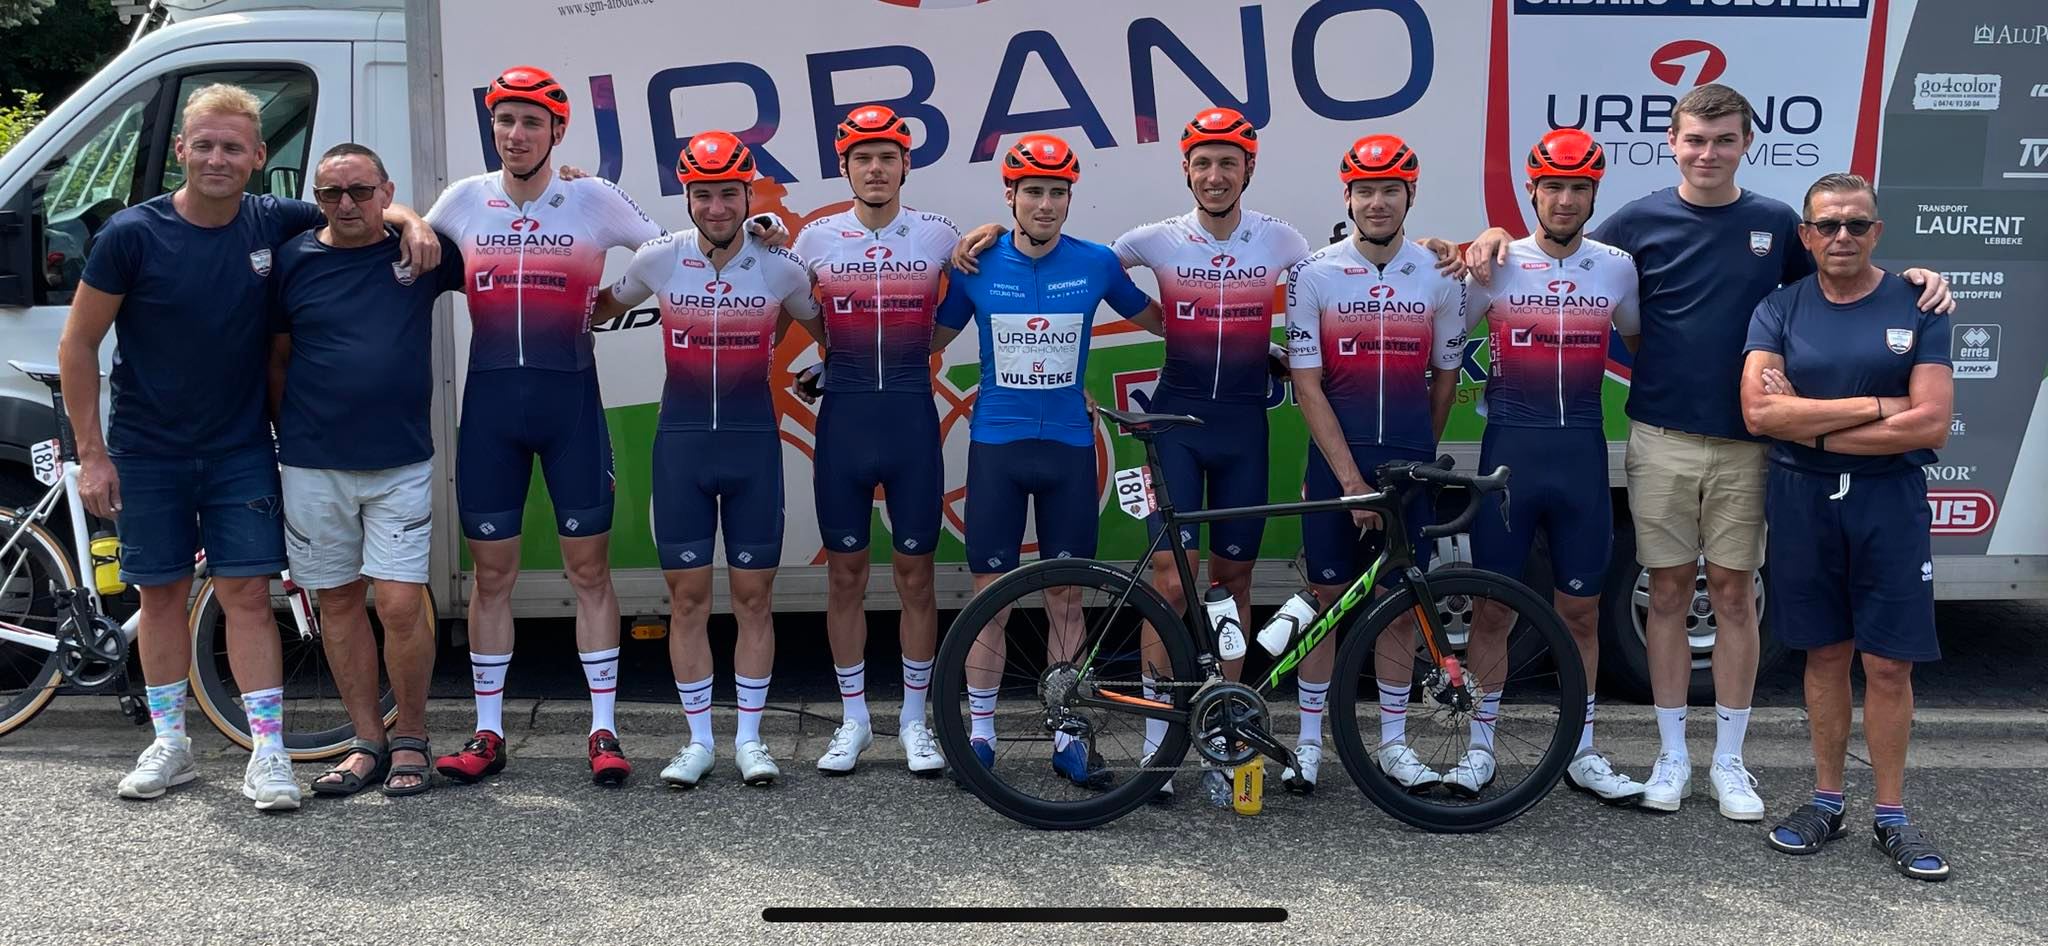 Urbano-Vulsteke CT eindwinnaar ploegenklassement in De Ronde Van Luik, maar niet gelauwerd op het podium…